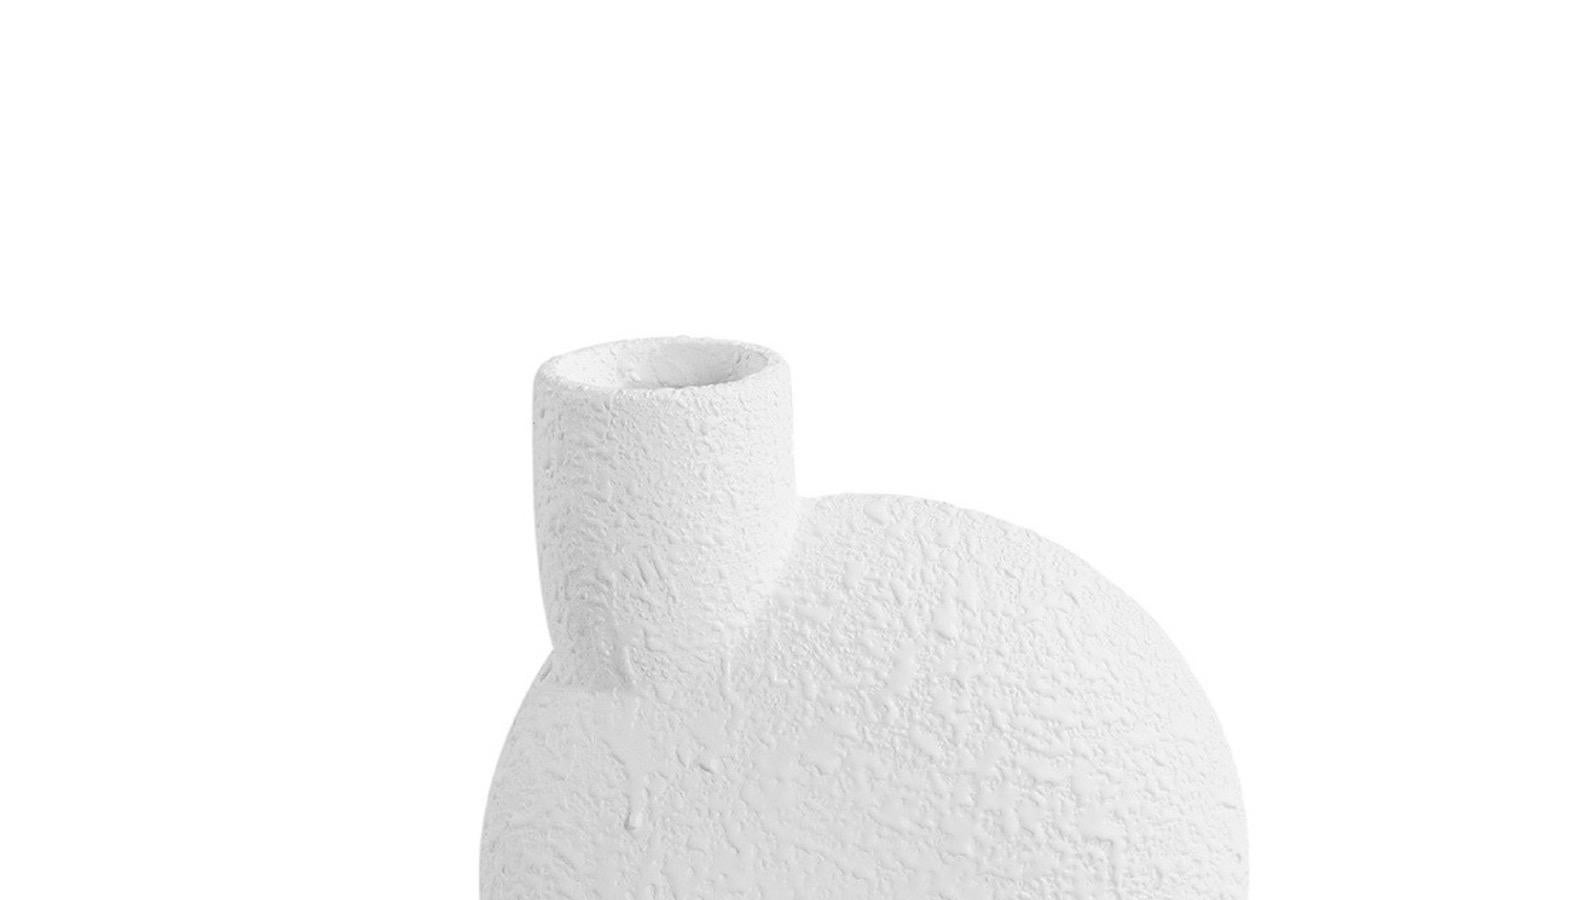 Zeitgenössische dänische Vase aus weißer Keramik mit Struktur.
Blasenförmiges Oberteil mit mittig angeordnetem, rohrförmigem Ausguss.
Einzelner rohrförmiger Sockel.

  